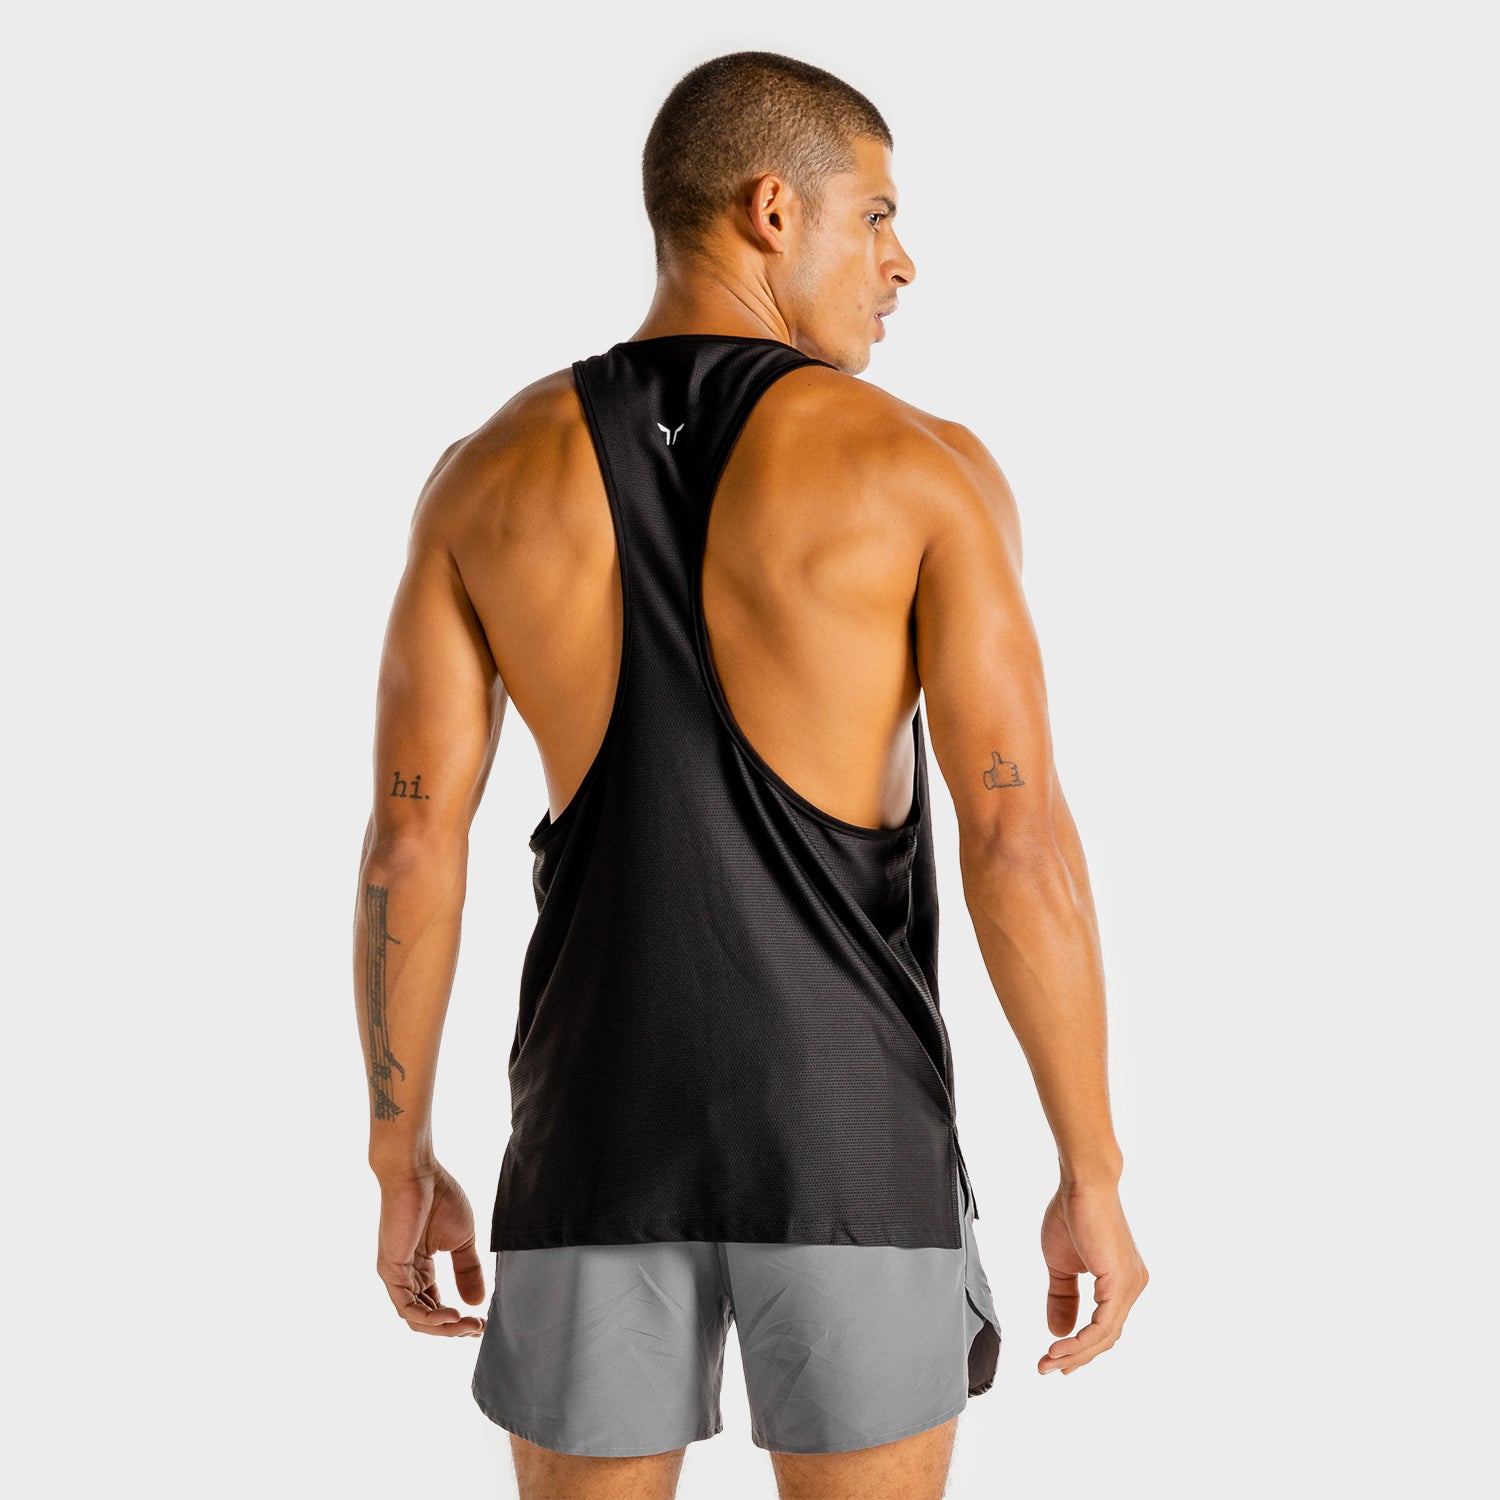 squatwolf-gym-wear-core-stringer-black-stringer-vests-for-men